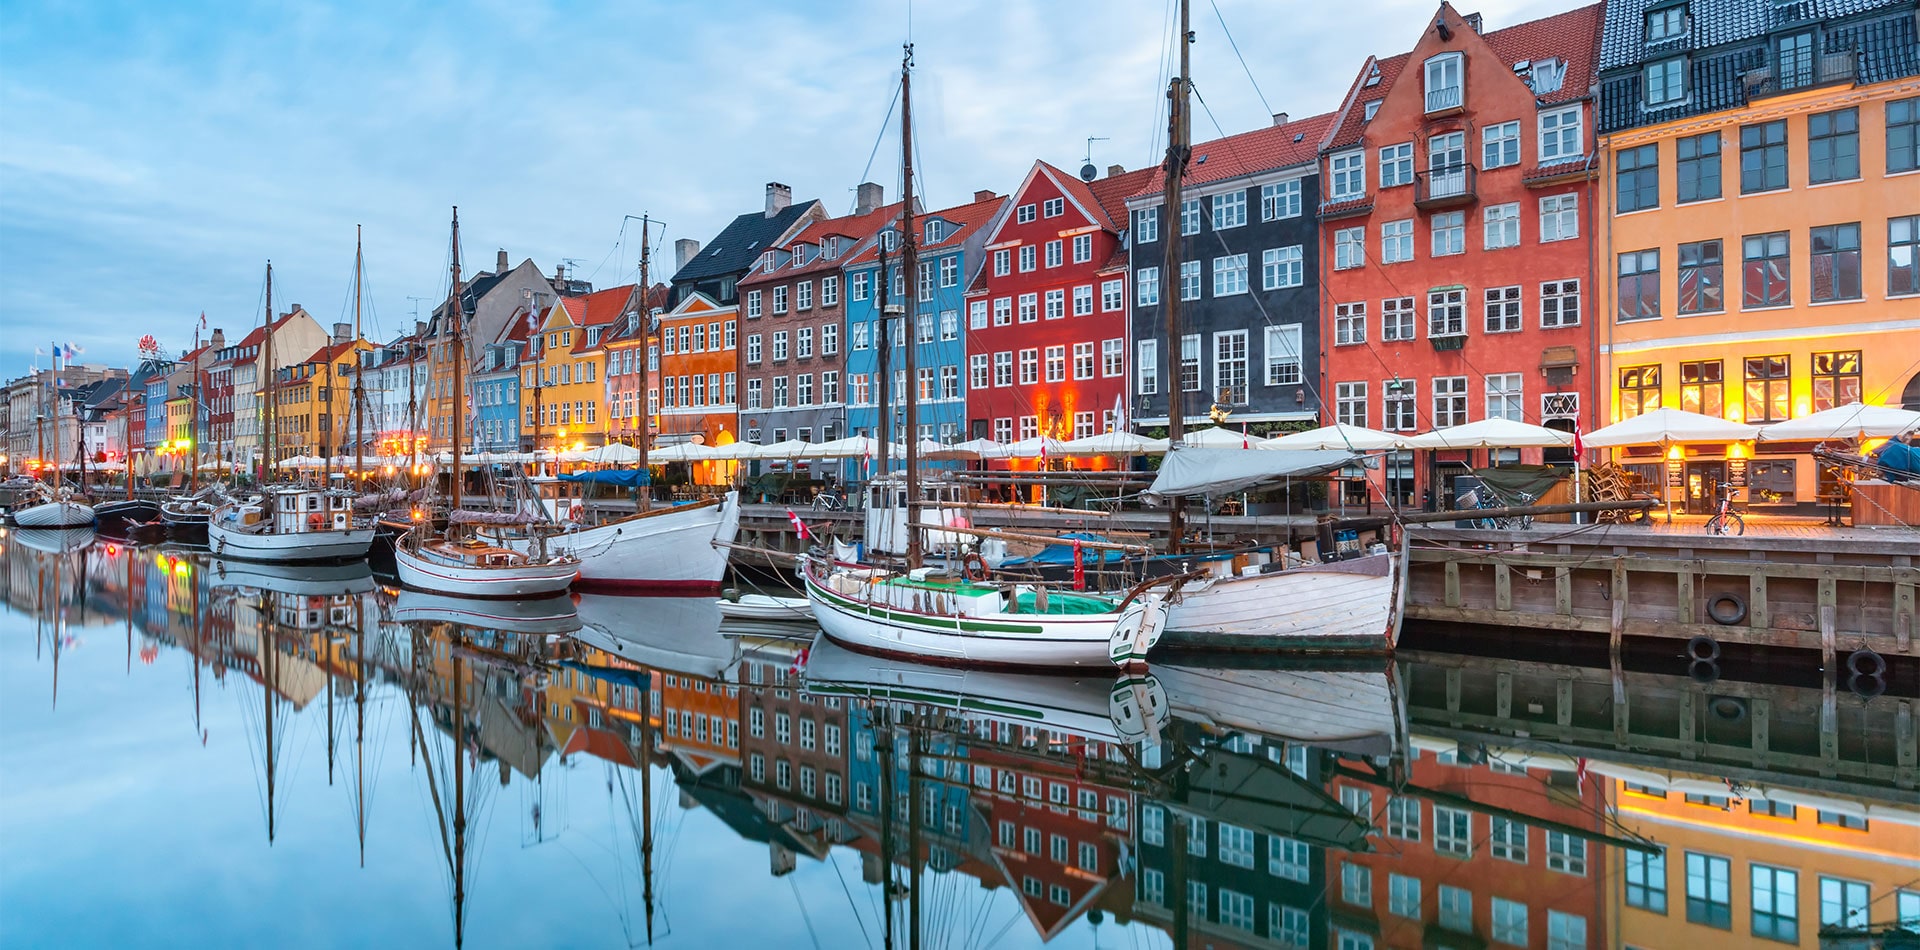 Nyhavn district in Copenhagen